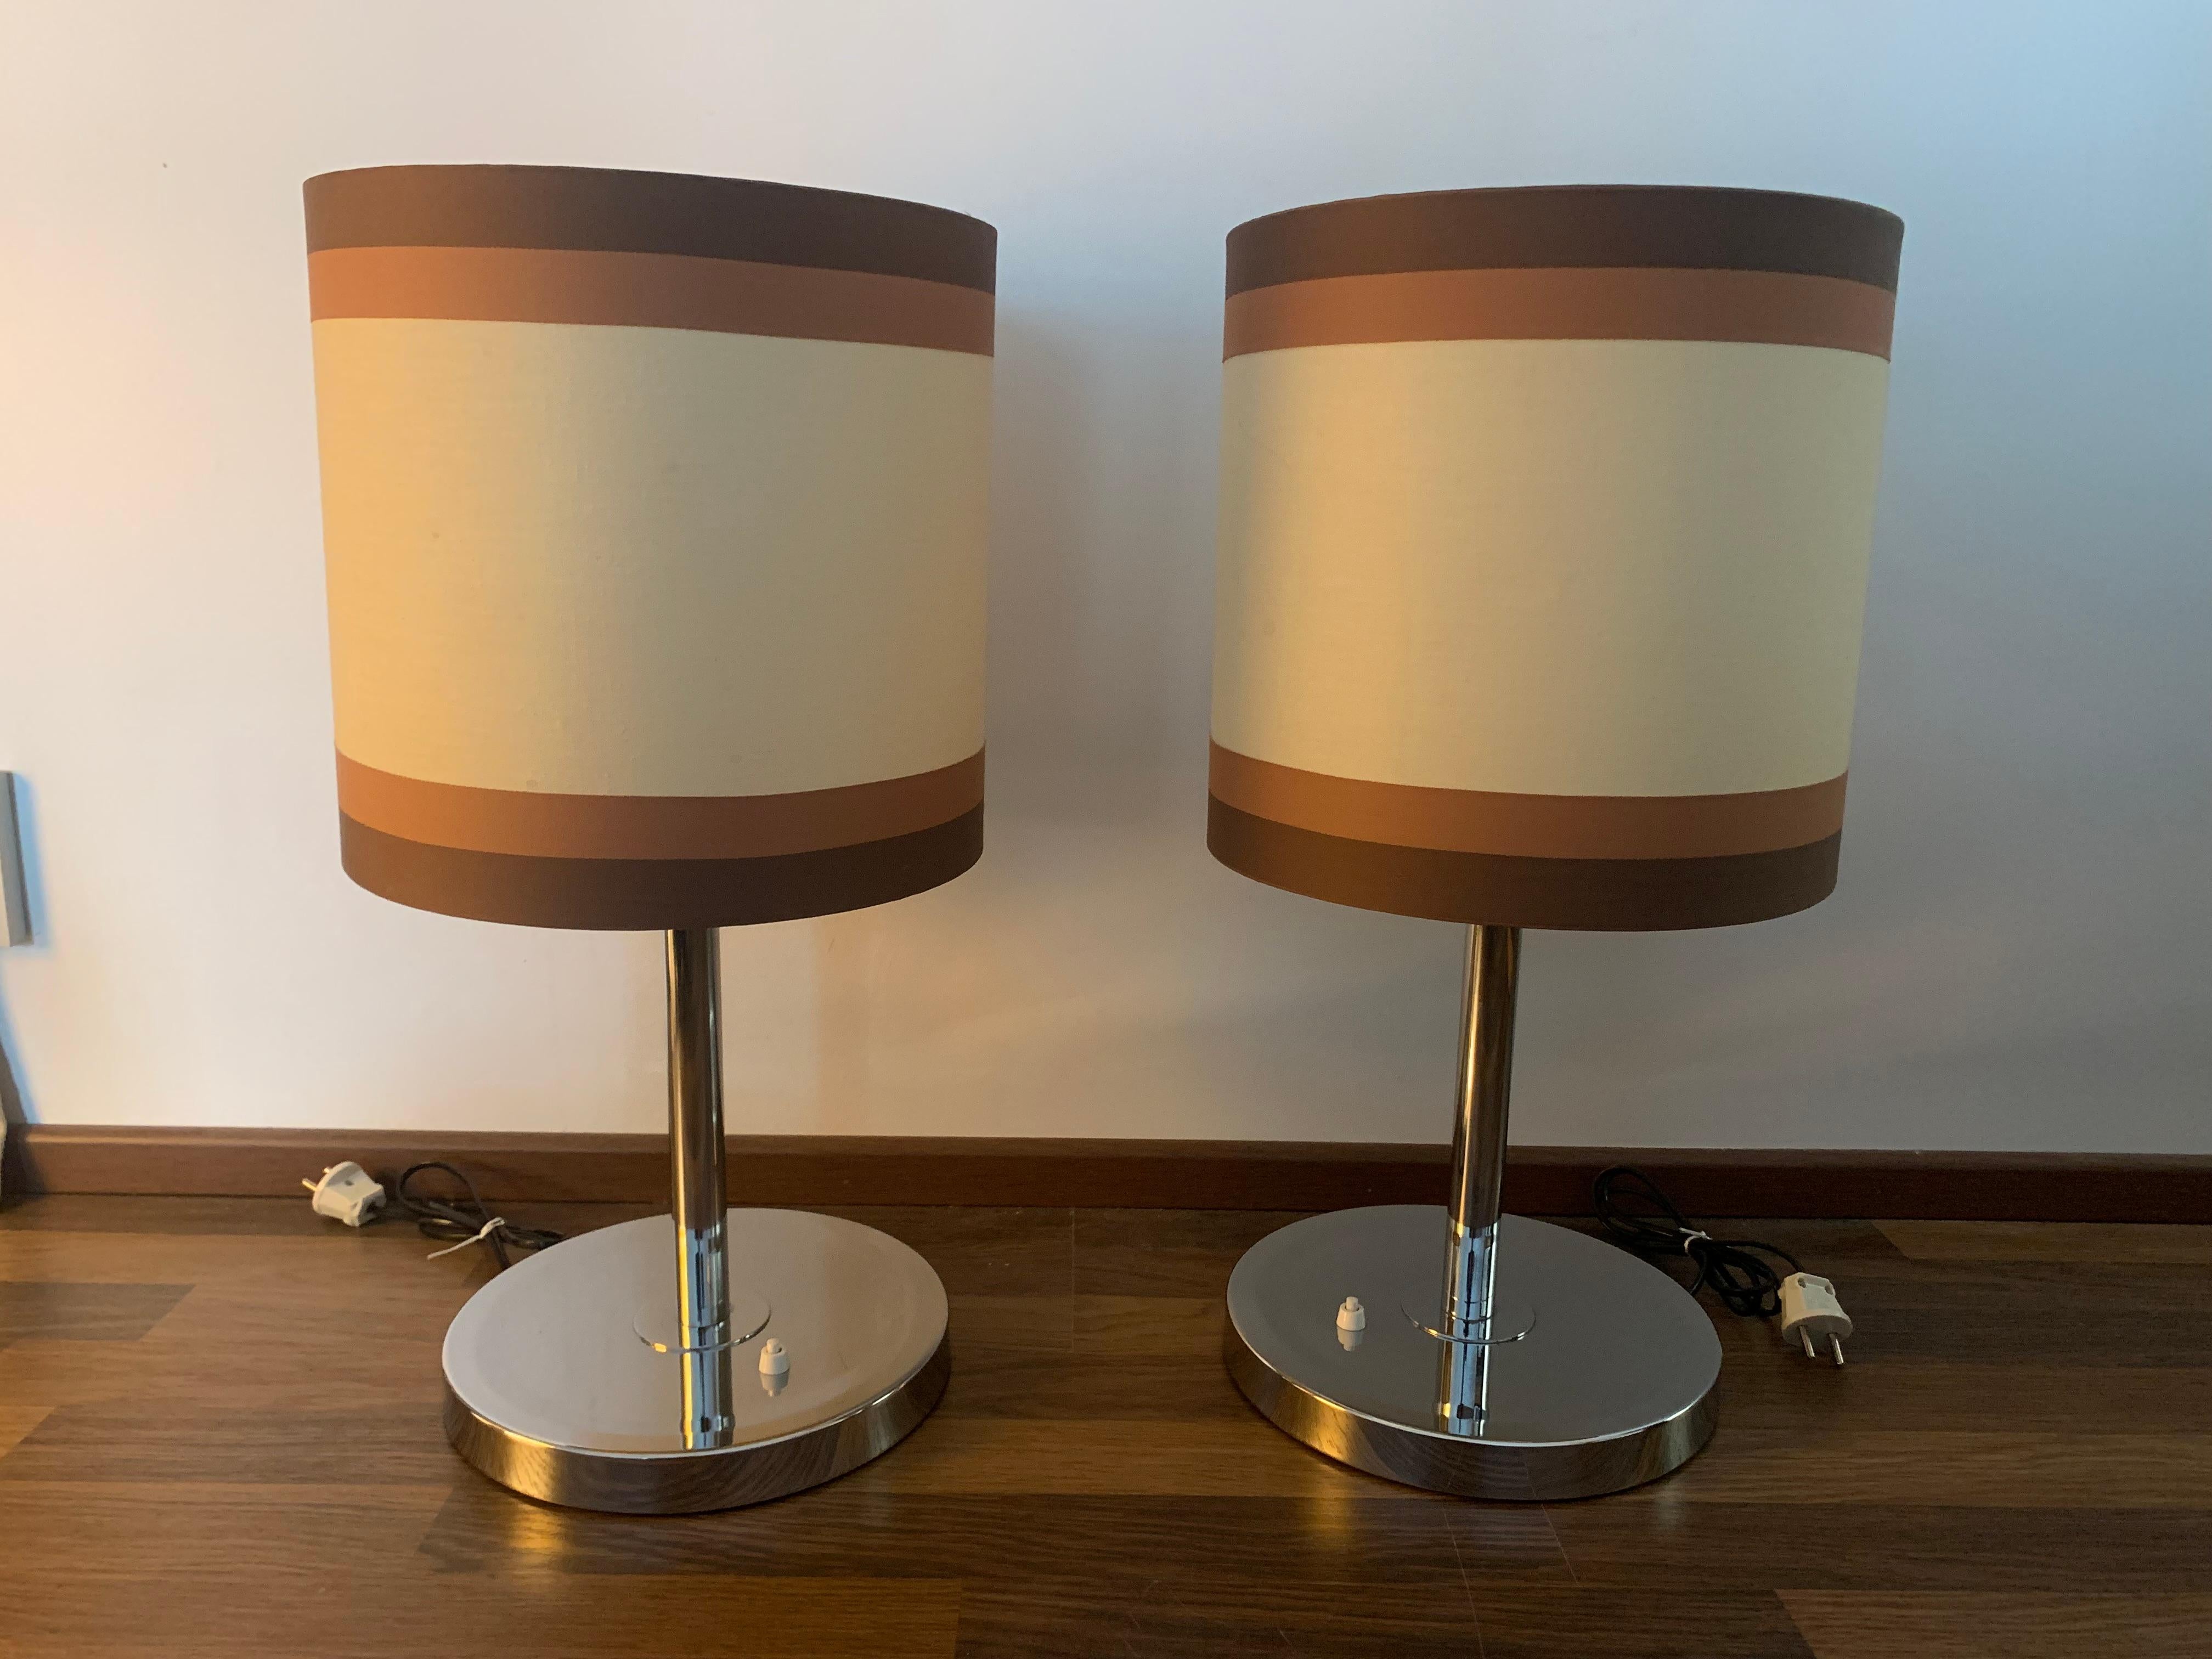 Une magnifique paire de lampes au design finlandais, les lampes sont ornées d'abat-jours originaux, qui sont en bon état d'origine. Ces lampes peuvent être utilisées directement pour éclairer votre maison.